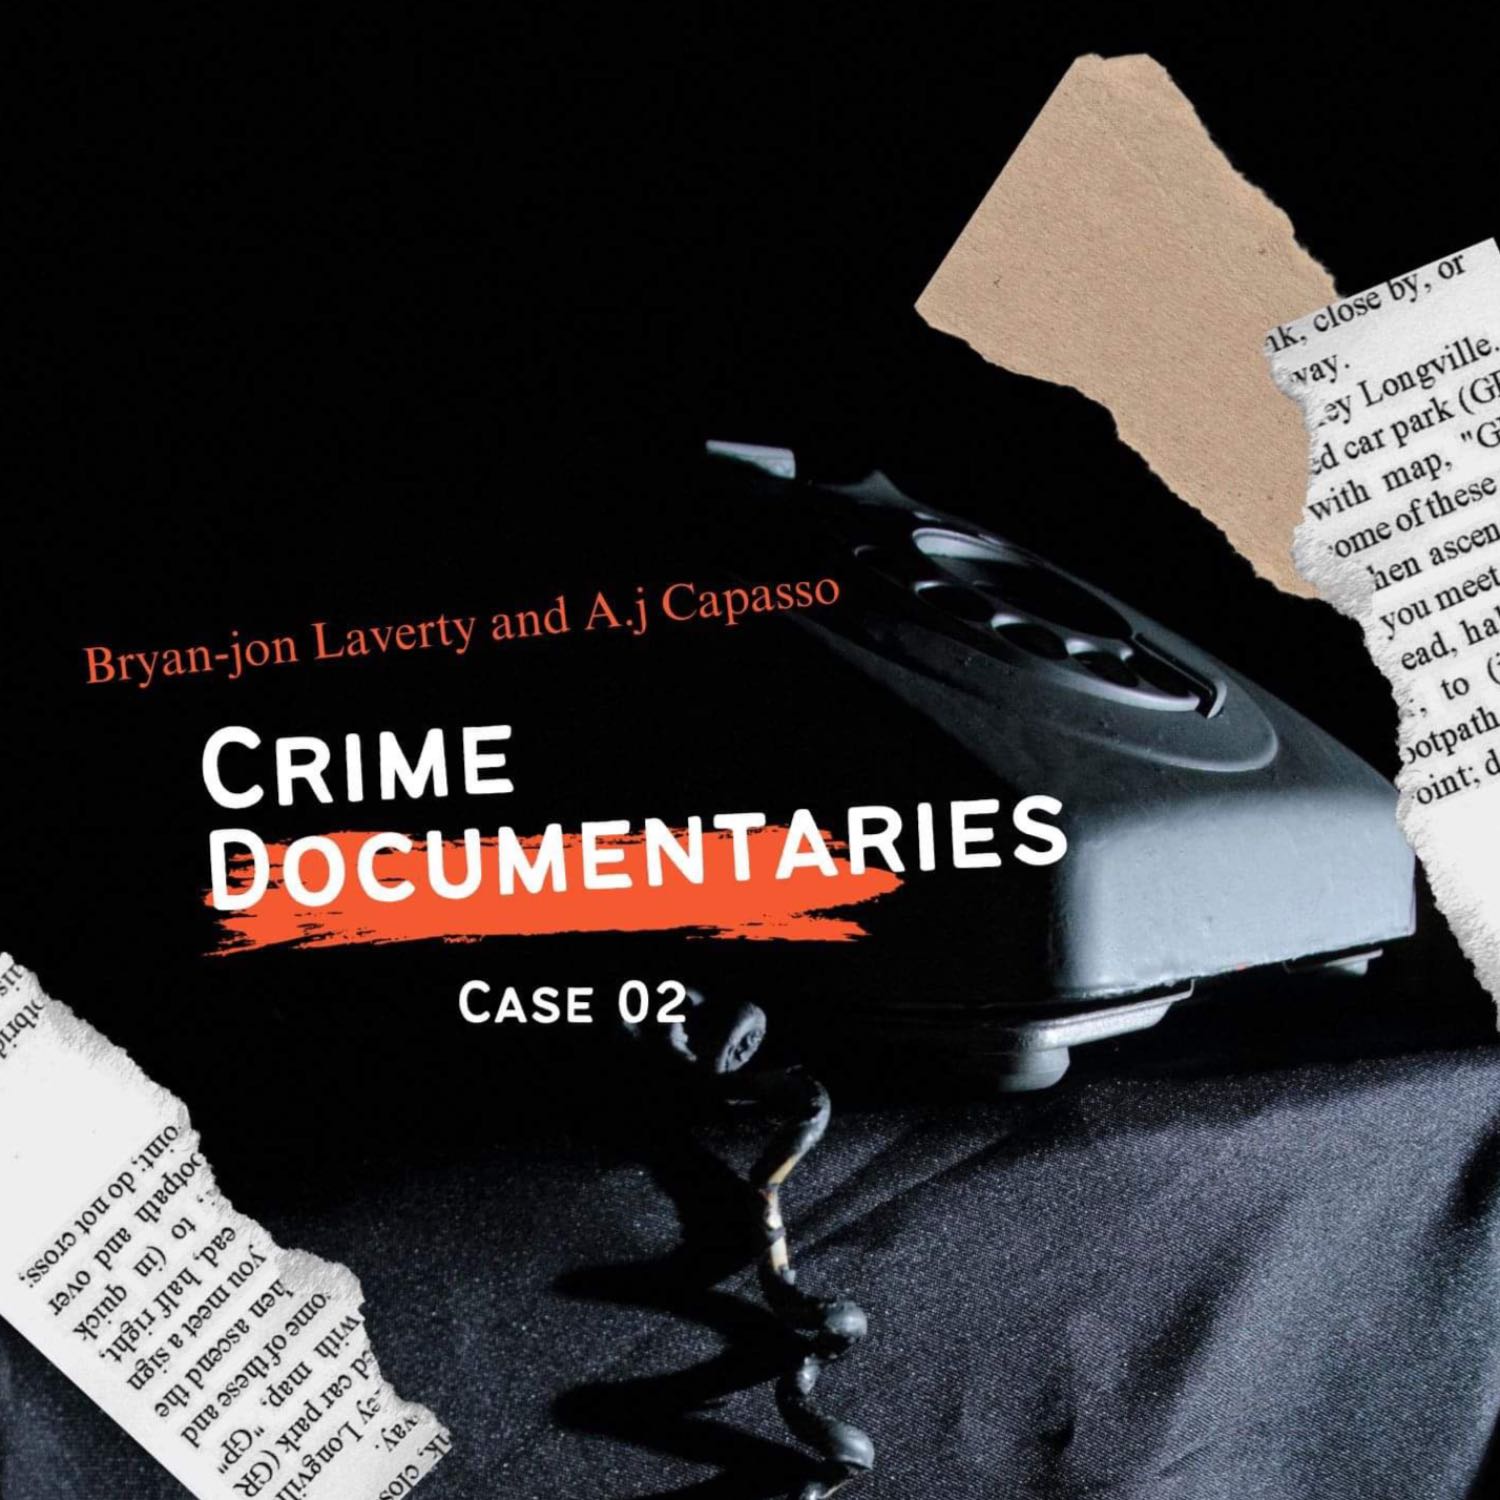 Case 002 “I Live With A Serial Killer” Sean Gillis Case